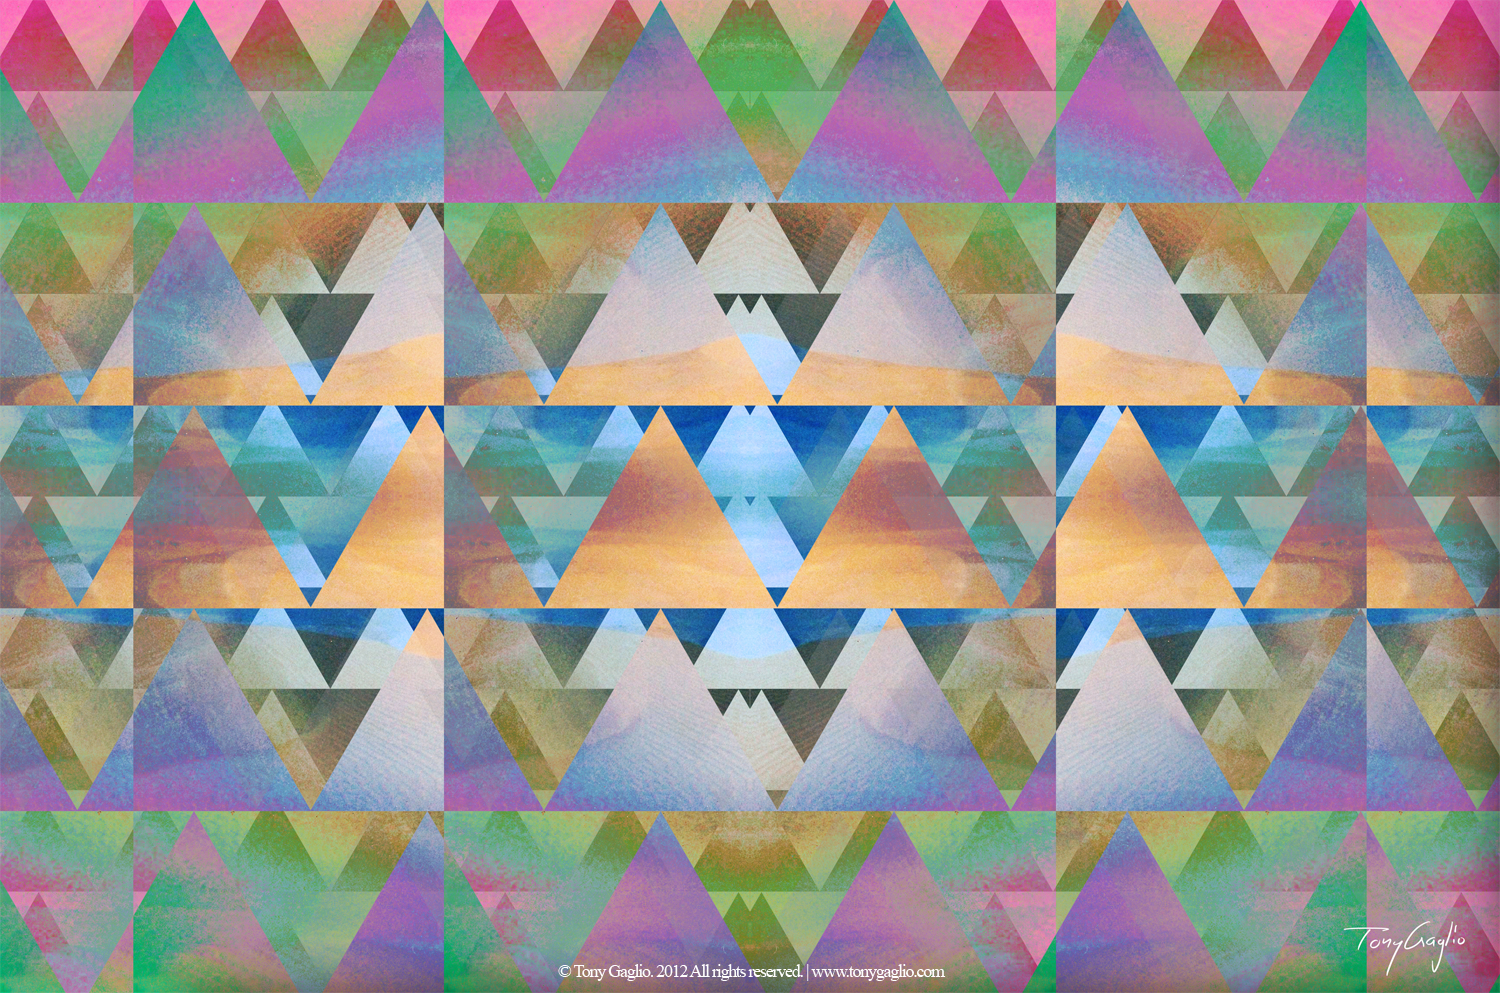 Curioos | «Triangular» Artwork by Tony Gaglio